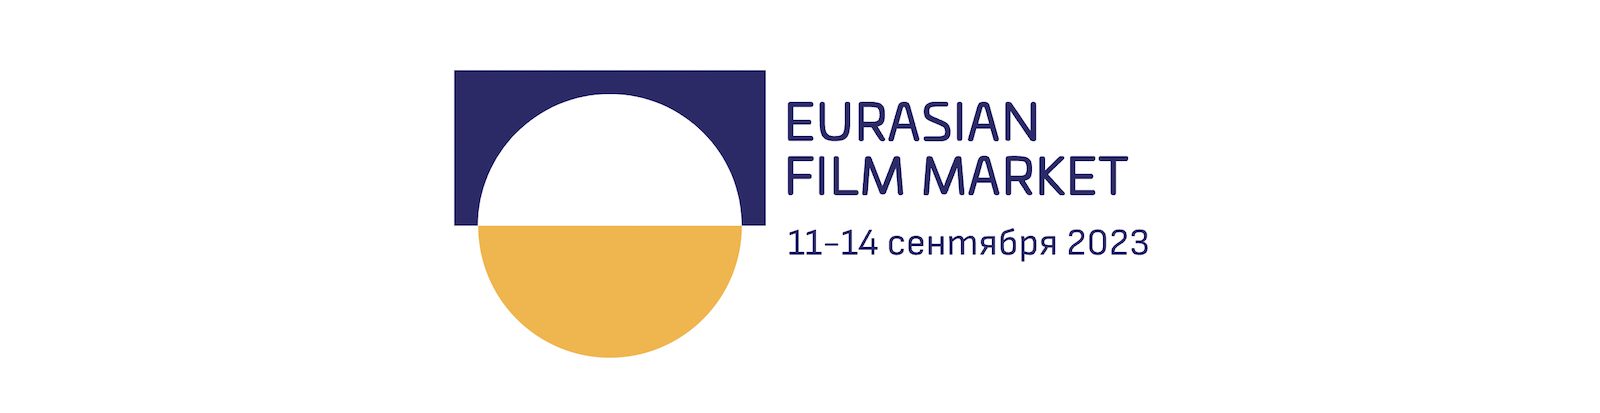 Первый Евразийский кинорынок пройдет в Казахстане с 11 по 14 сентября